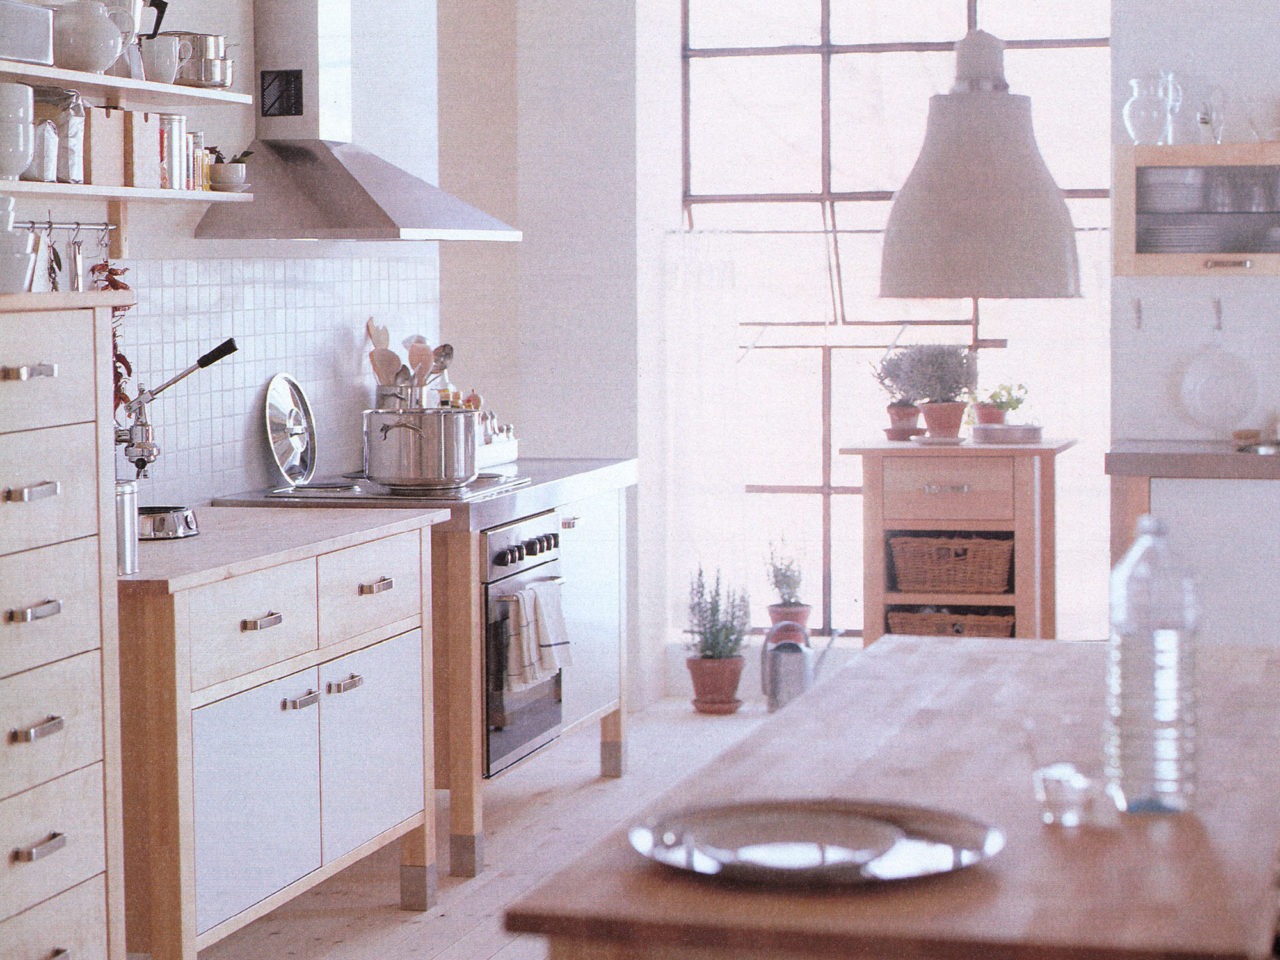 Cocina de madera con placas y horno, armarios e islas autónomos. Baldosas blancas y detalles en acero inoxidable.